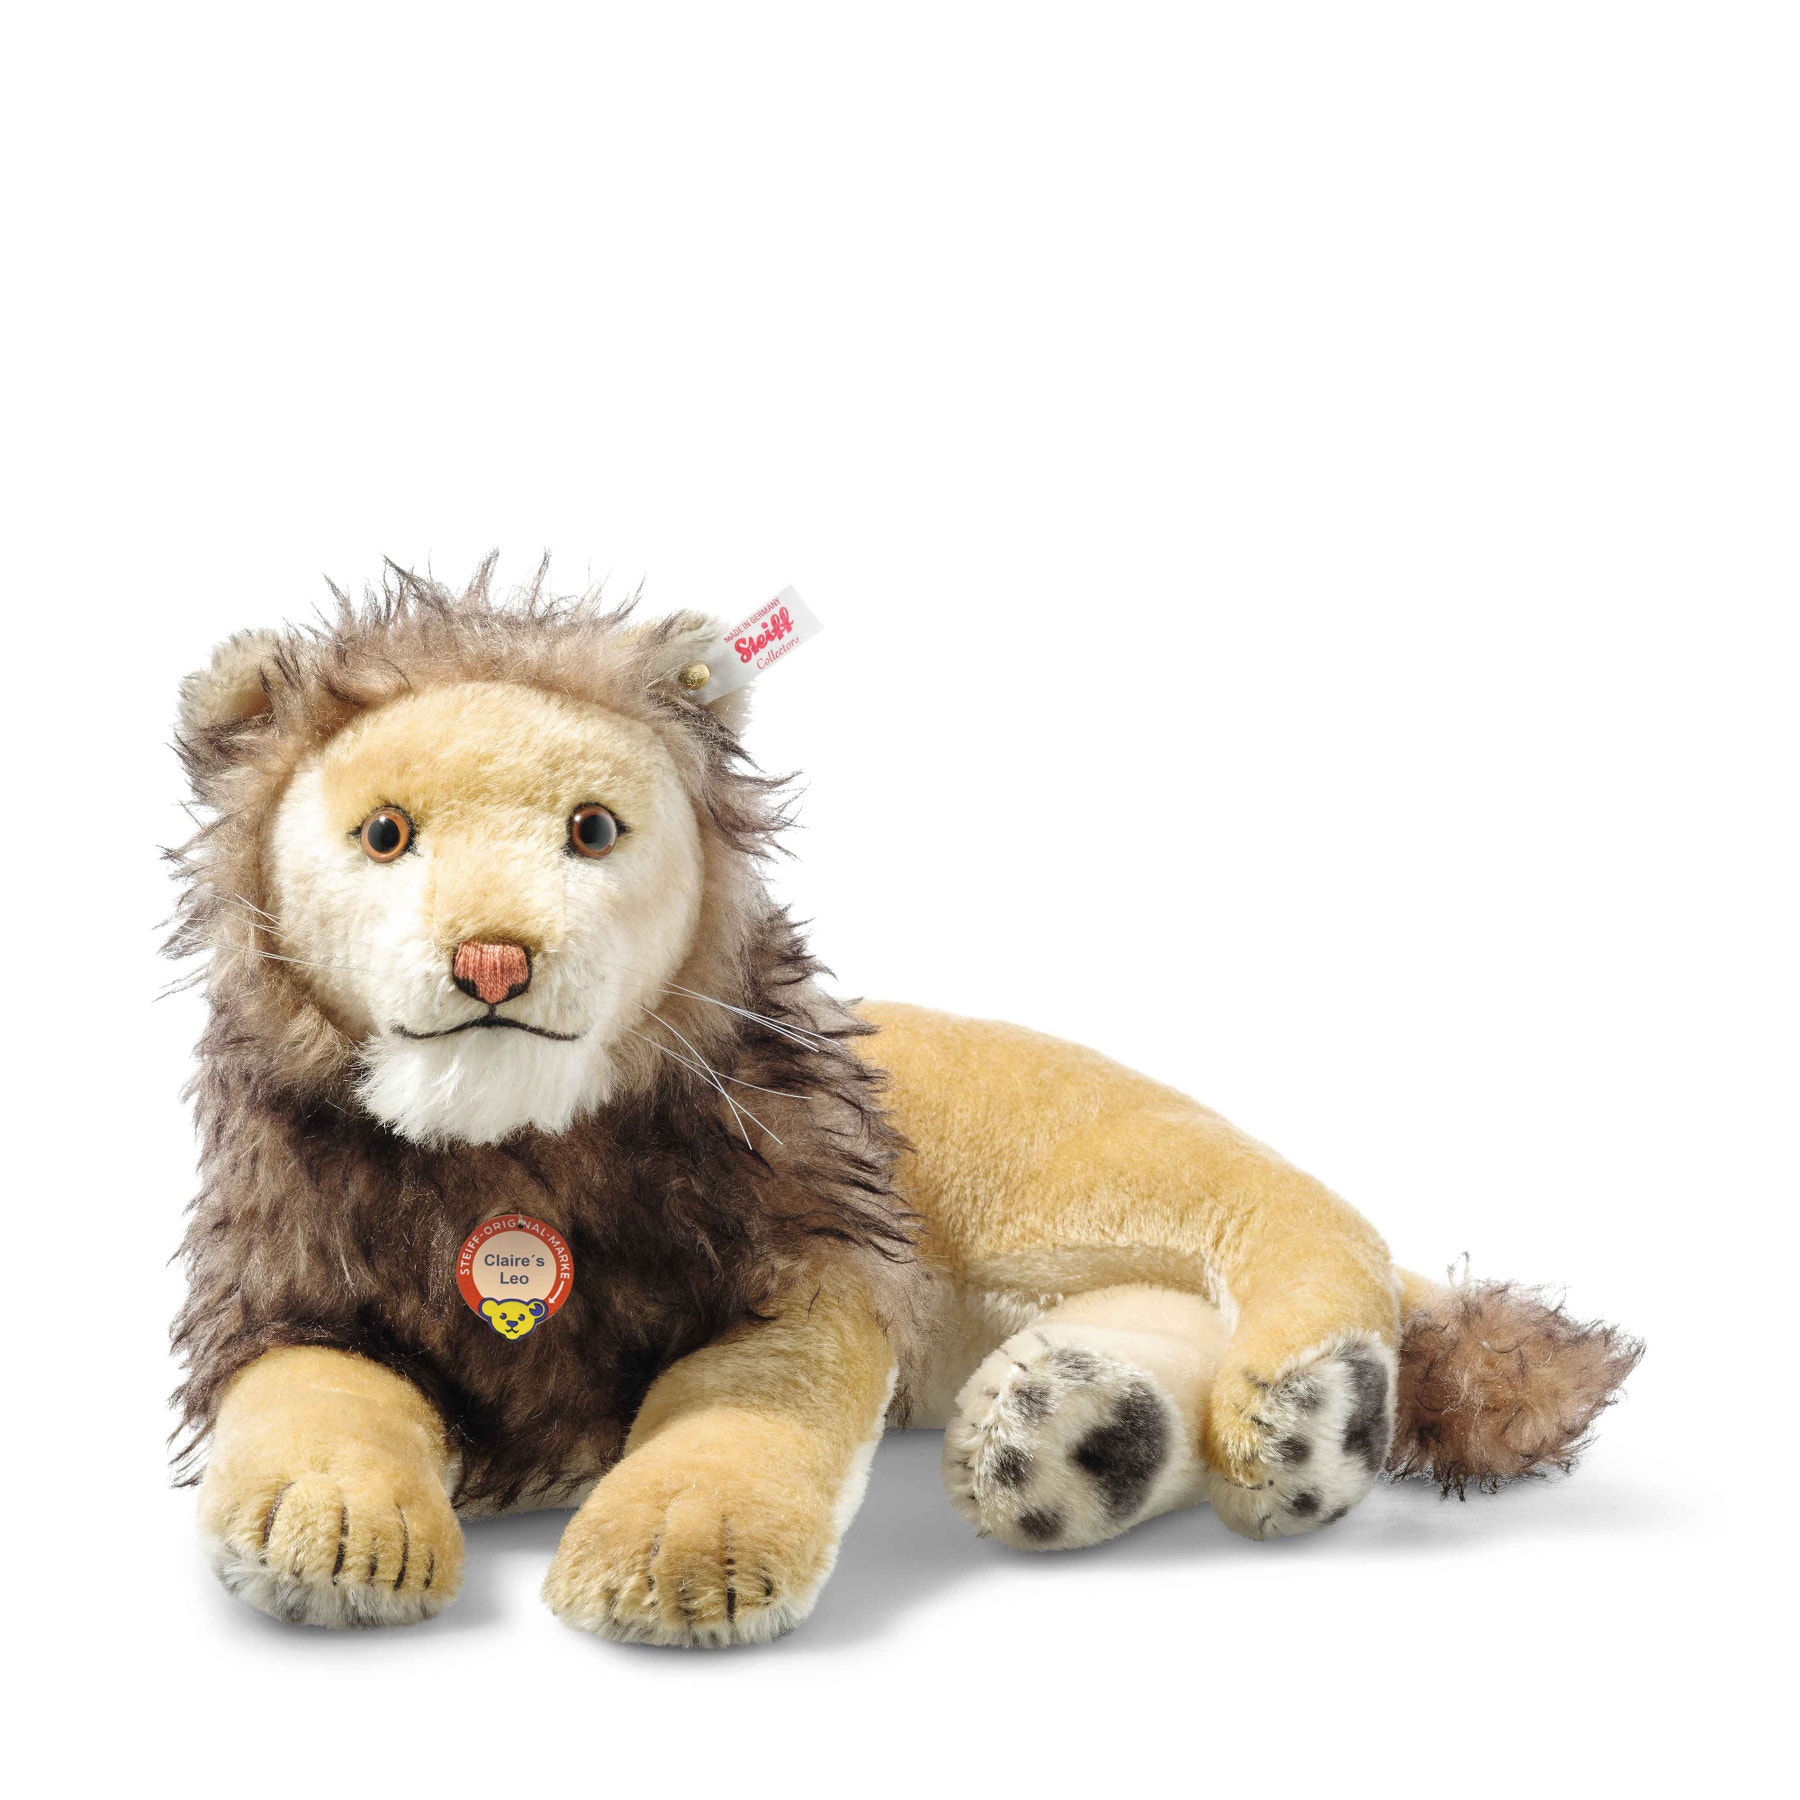 Claire's Leo lion